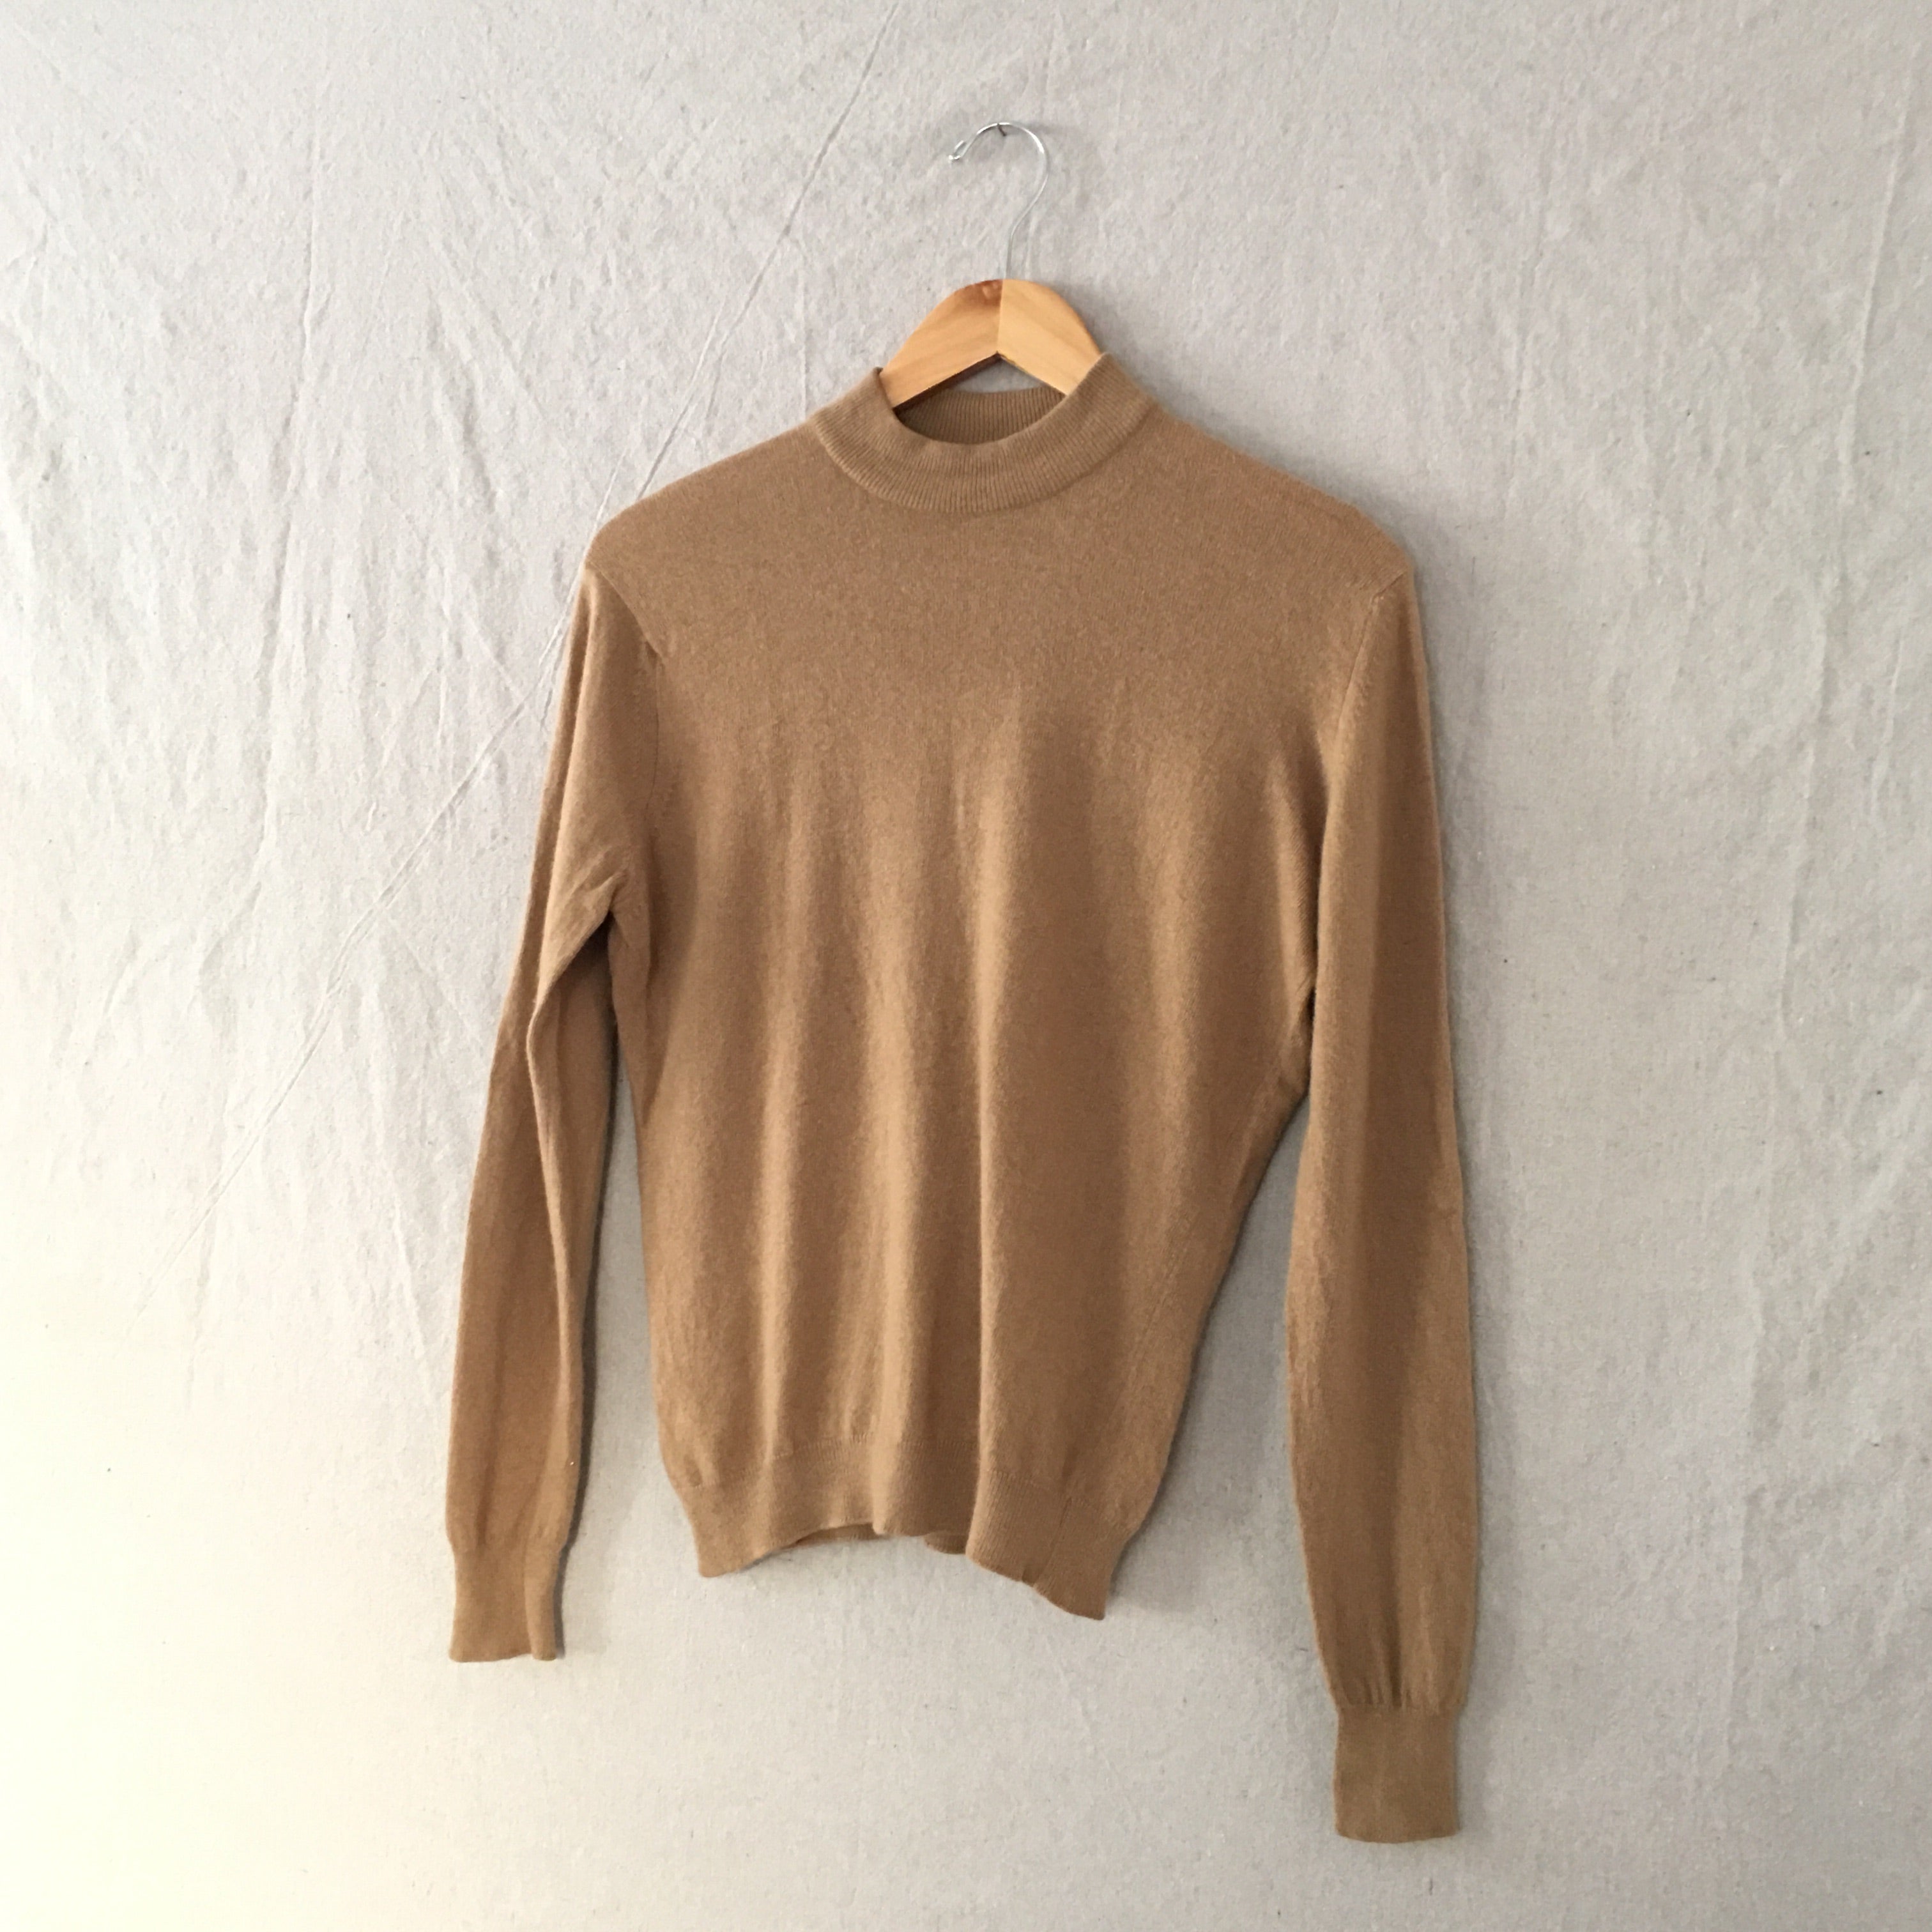 Camel Cashmere Mockneck Sweater